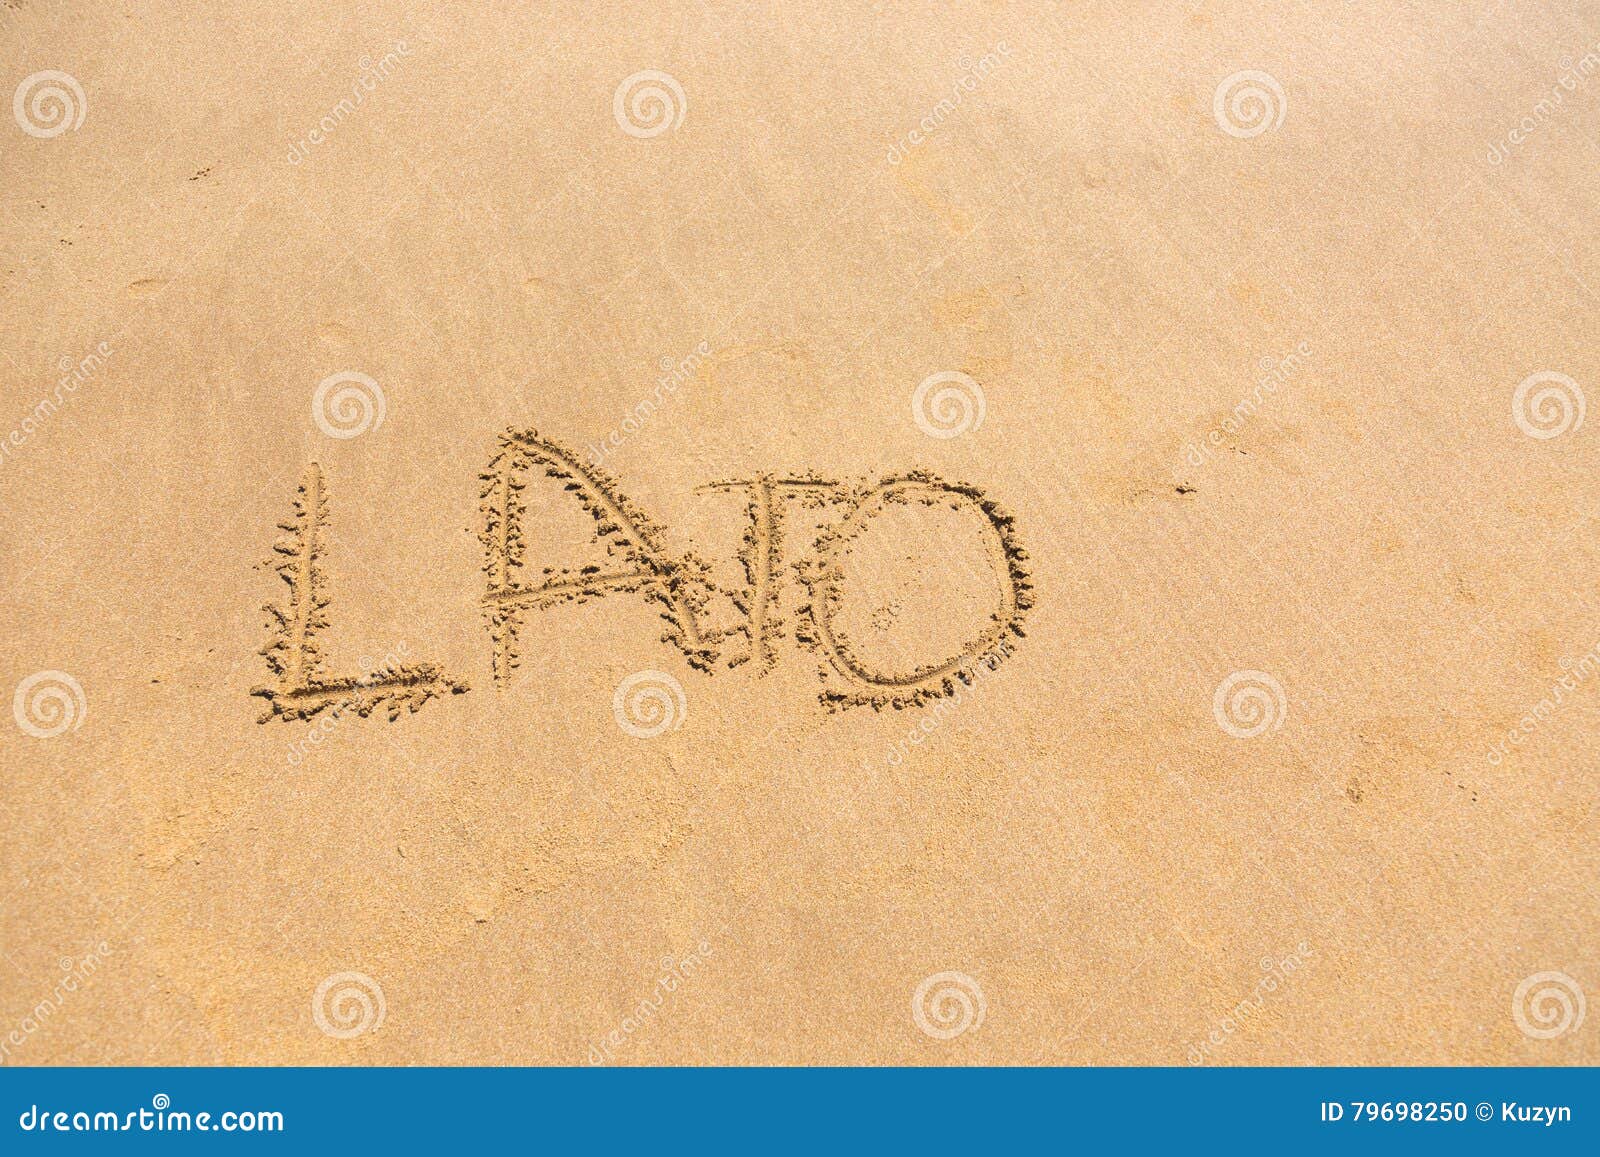 'lato' word written on sand